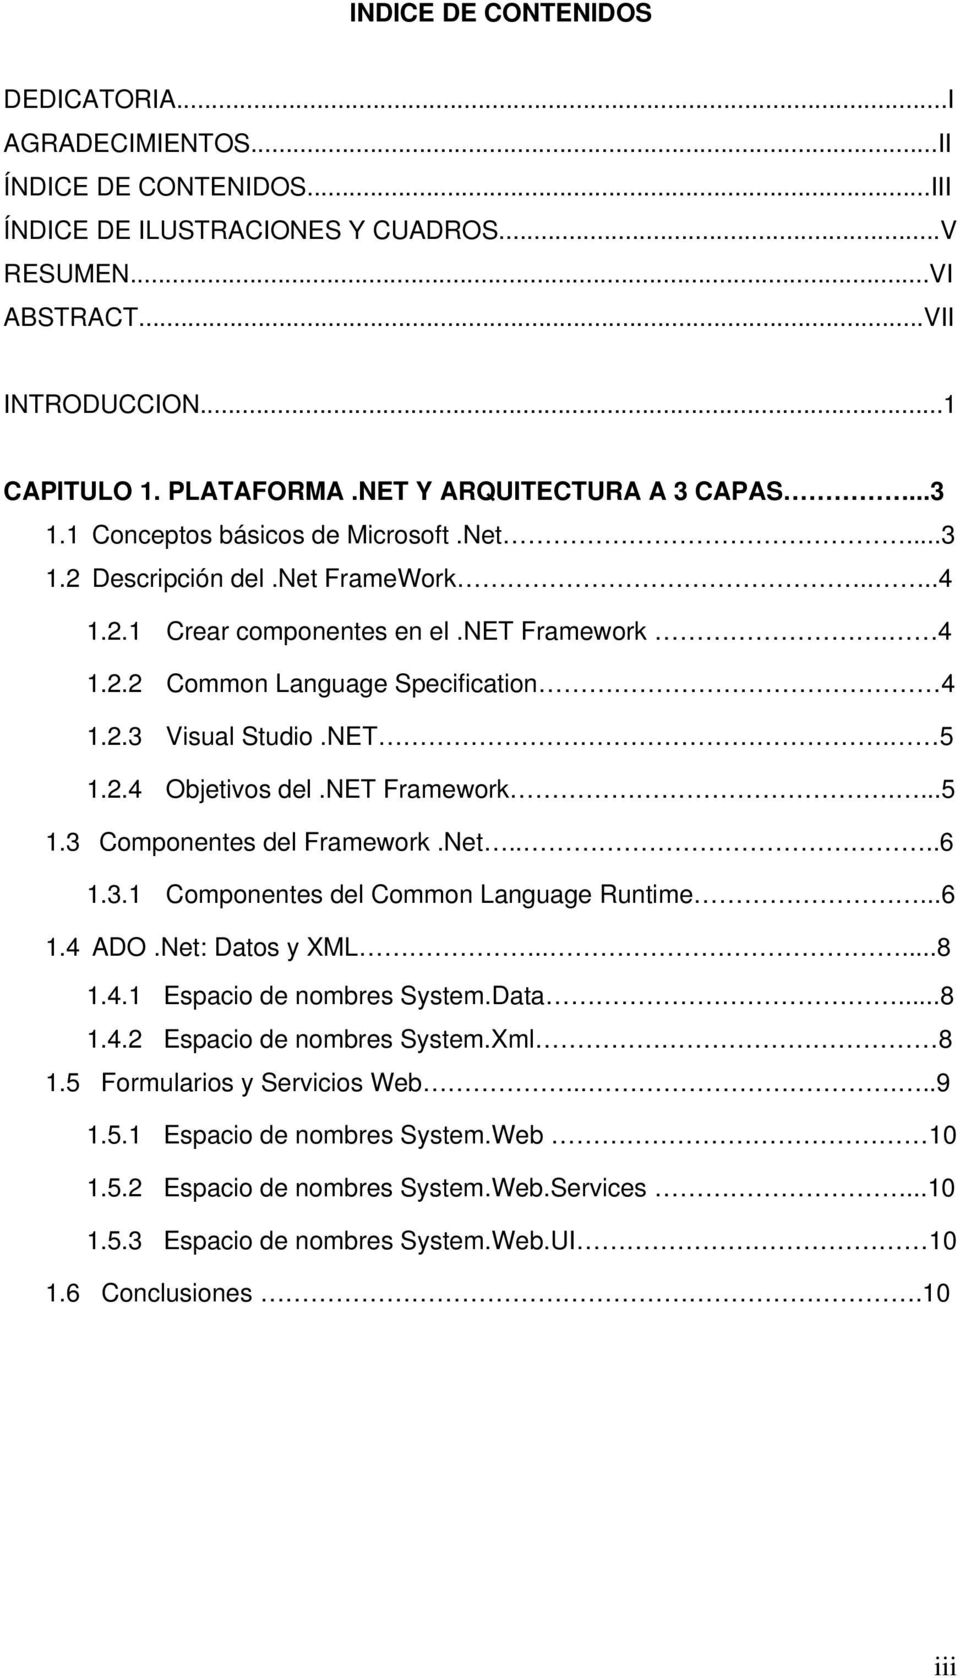 2.3 Visual Studio.NET. 5 1.2.4 Objetivos del.net Framework....5 1.3 Componentes del Framework.Net....6 1.3.1 Componentes del Common Language Runtime...6 1.4 ADO.Net: Datos y XML.....8 1.4.1 Espacio de nombres System.